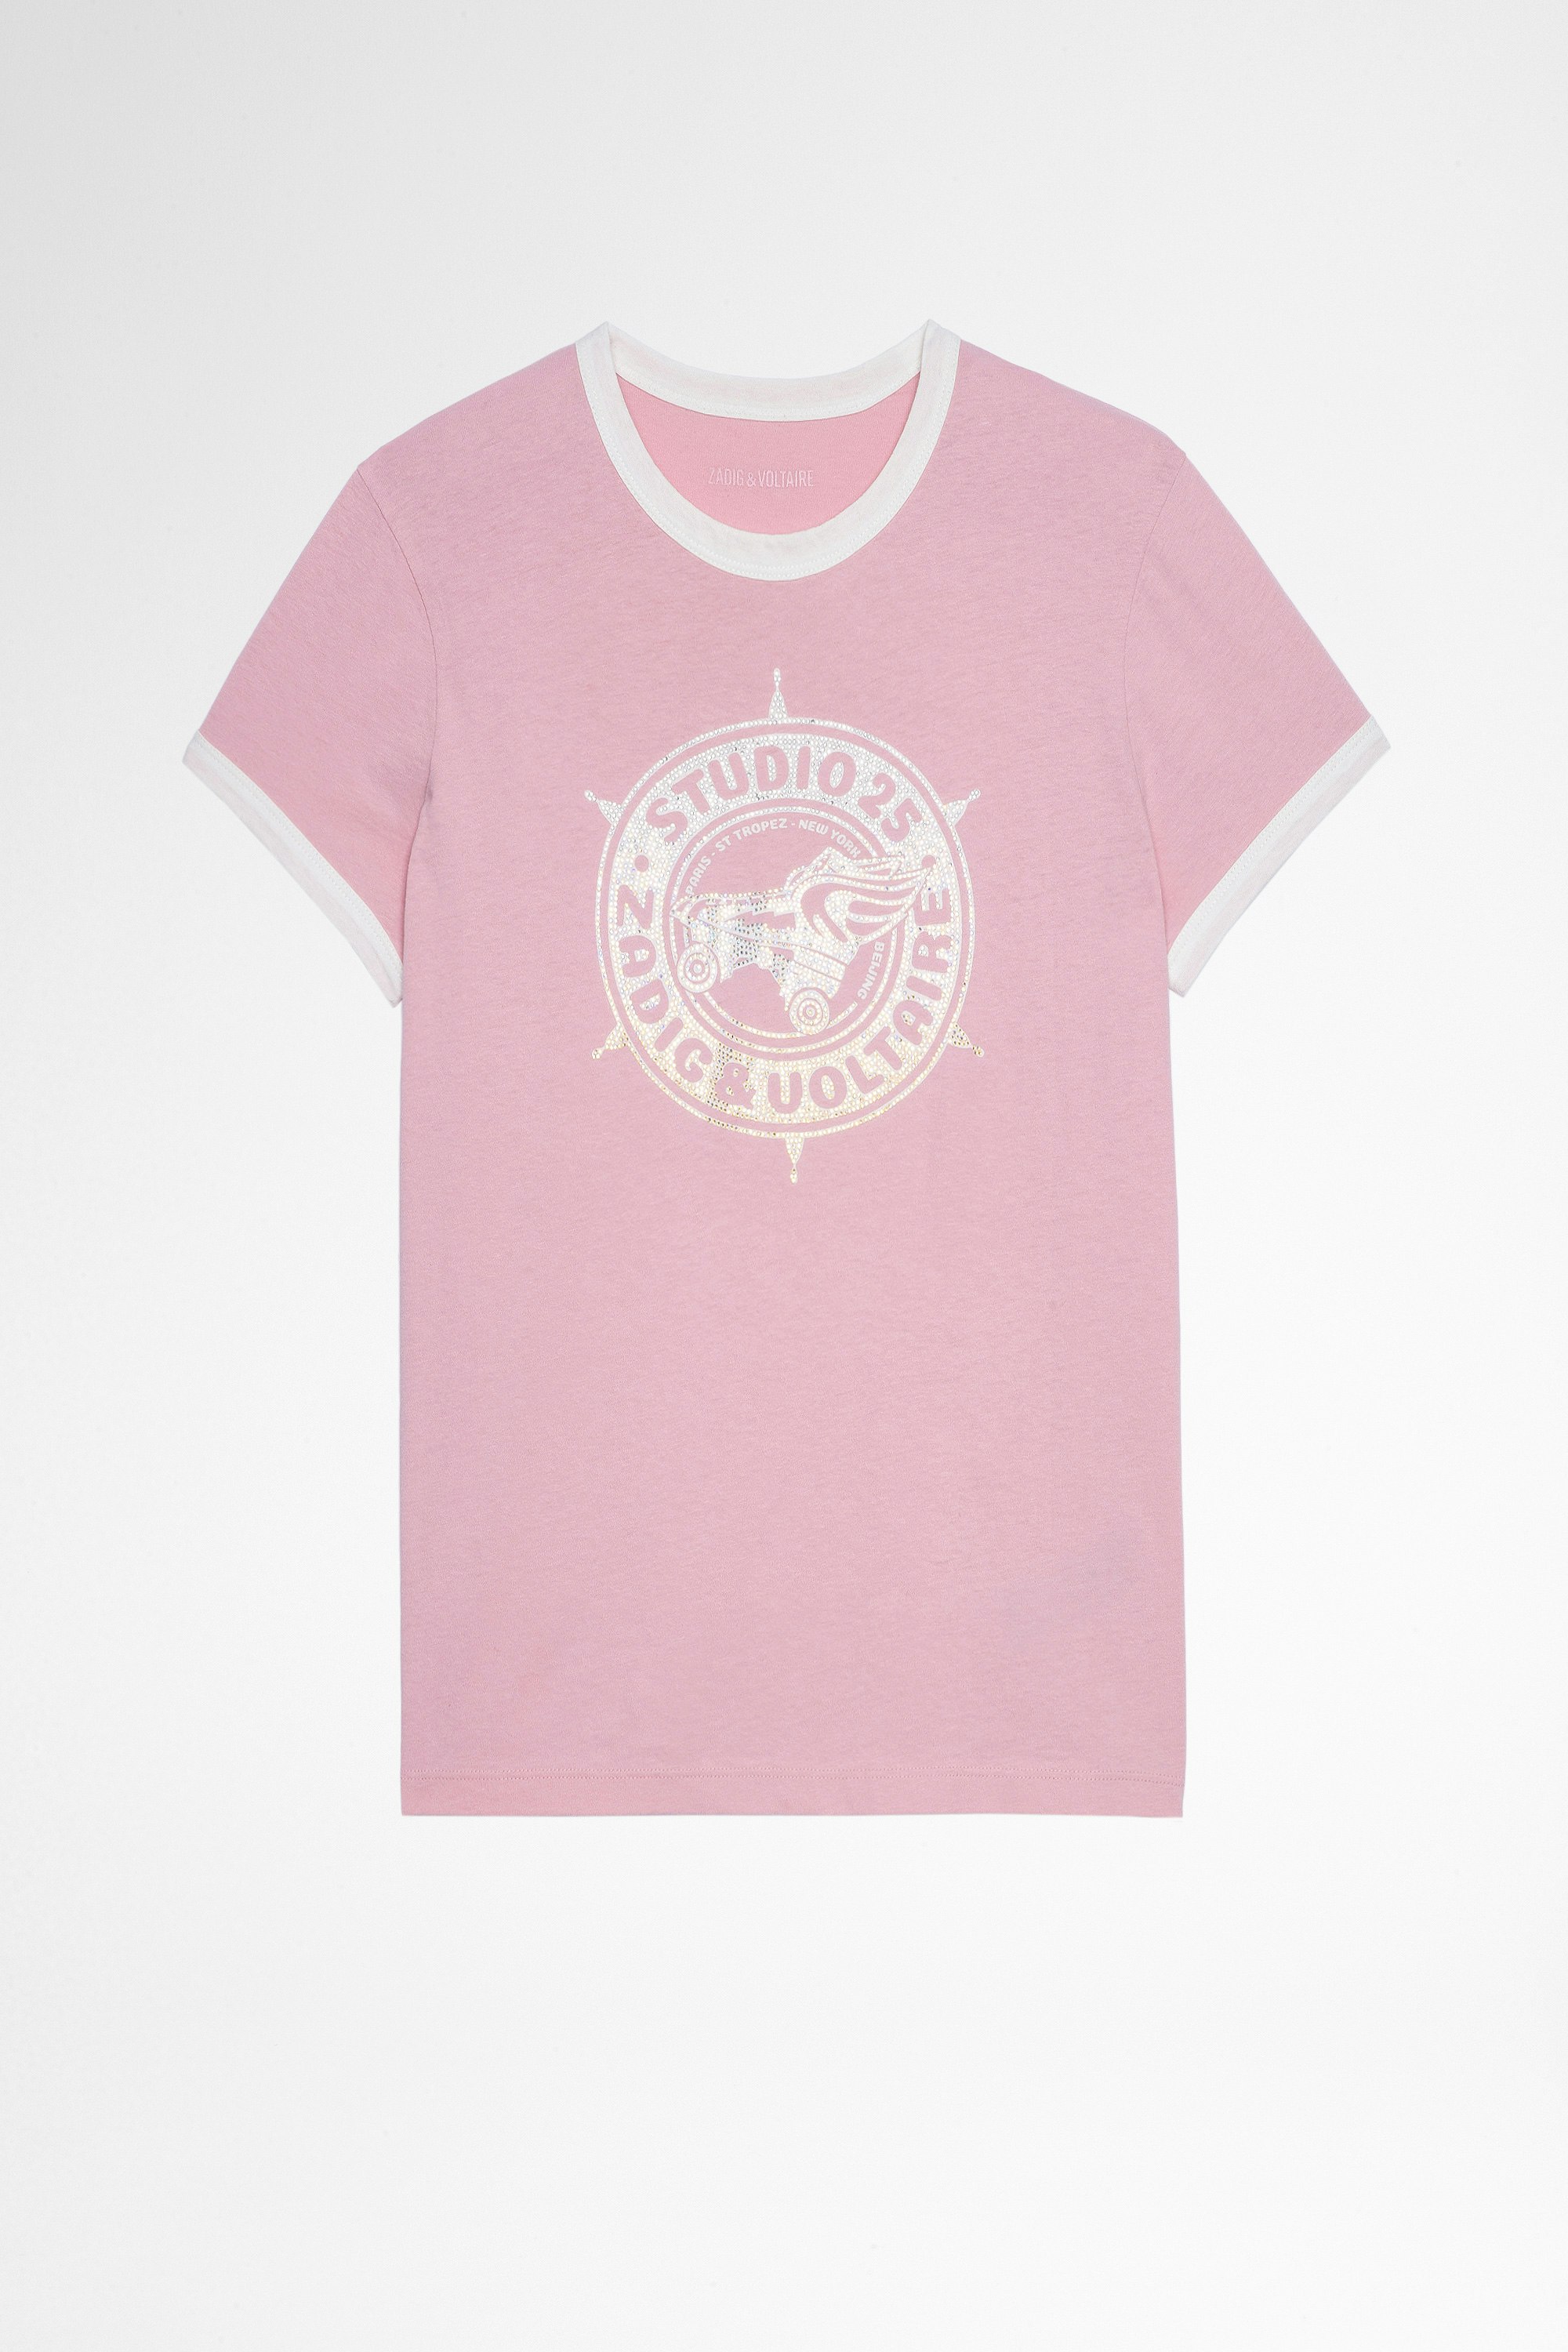 T-shirt Zoe Studio 25 Strass T-shirt aus rosafarbener Baumwolle mit Studio 25 Print mit Kristallen für Damen